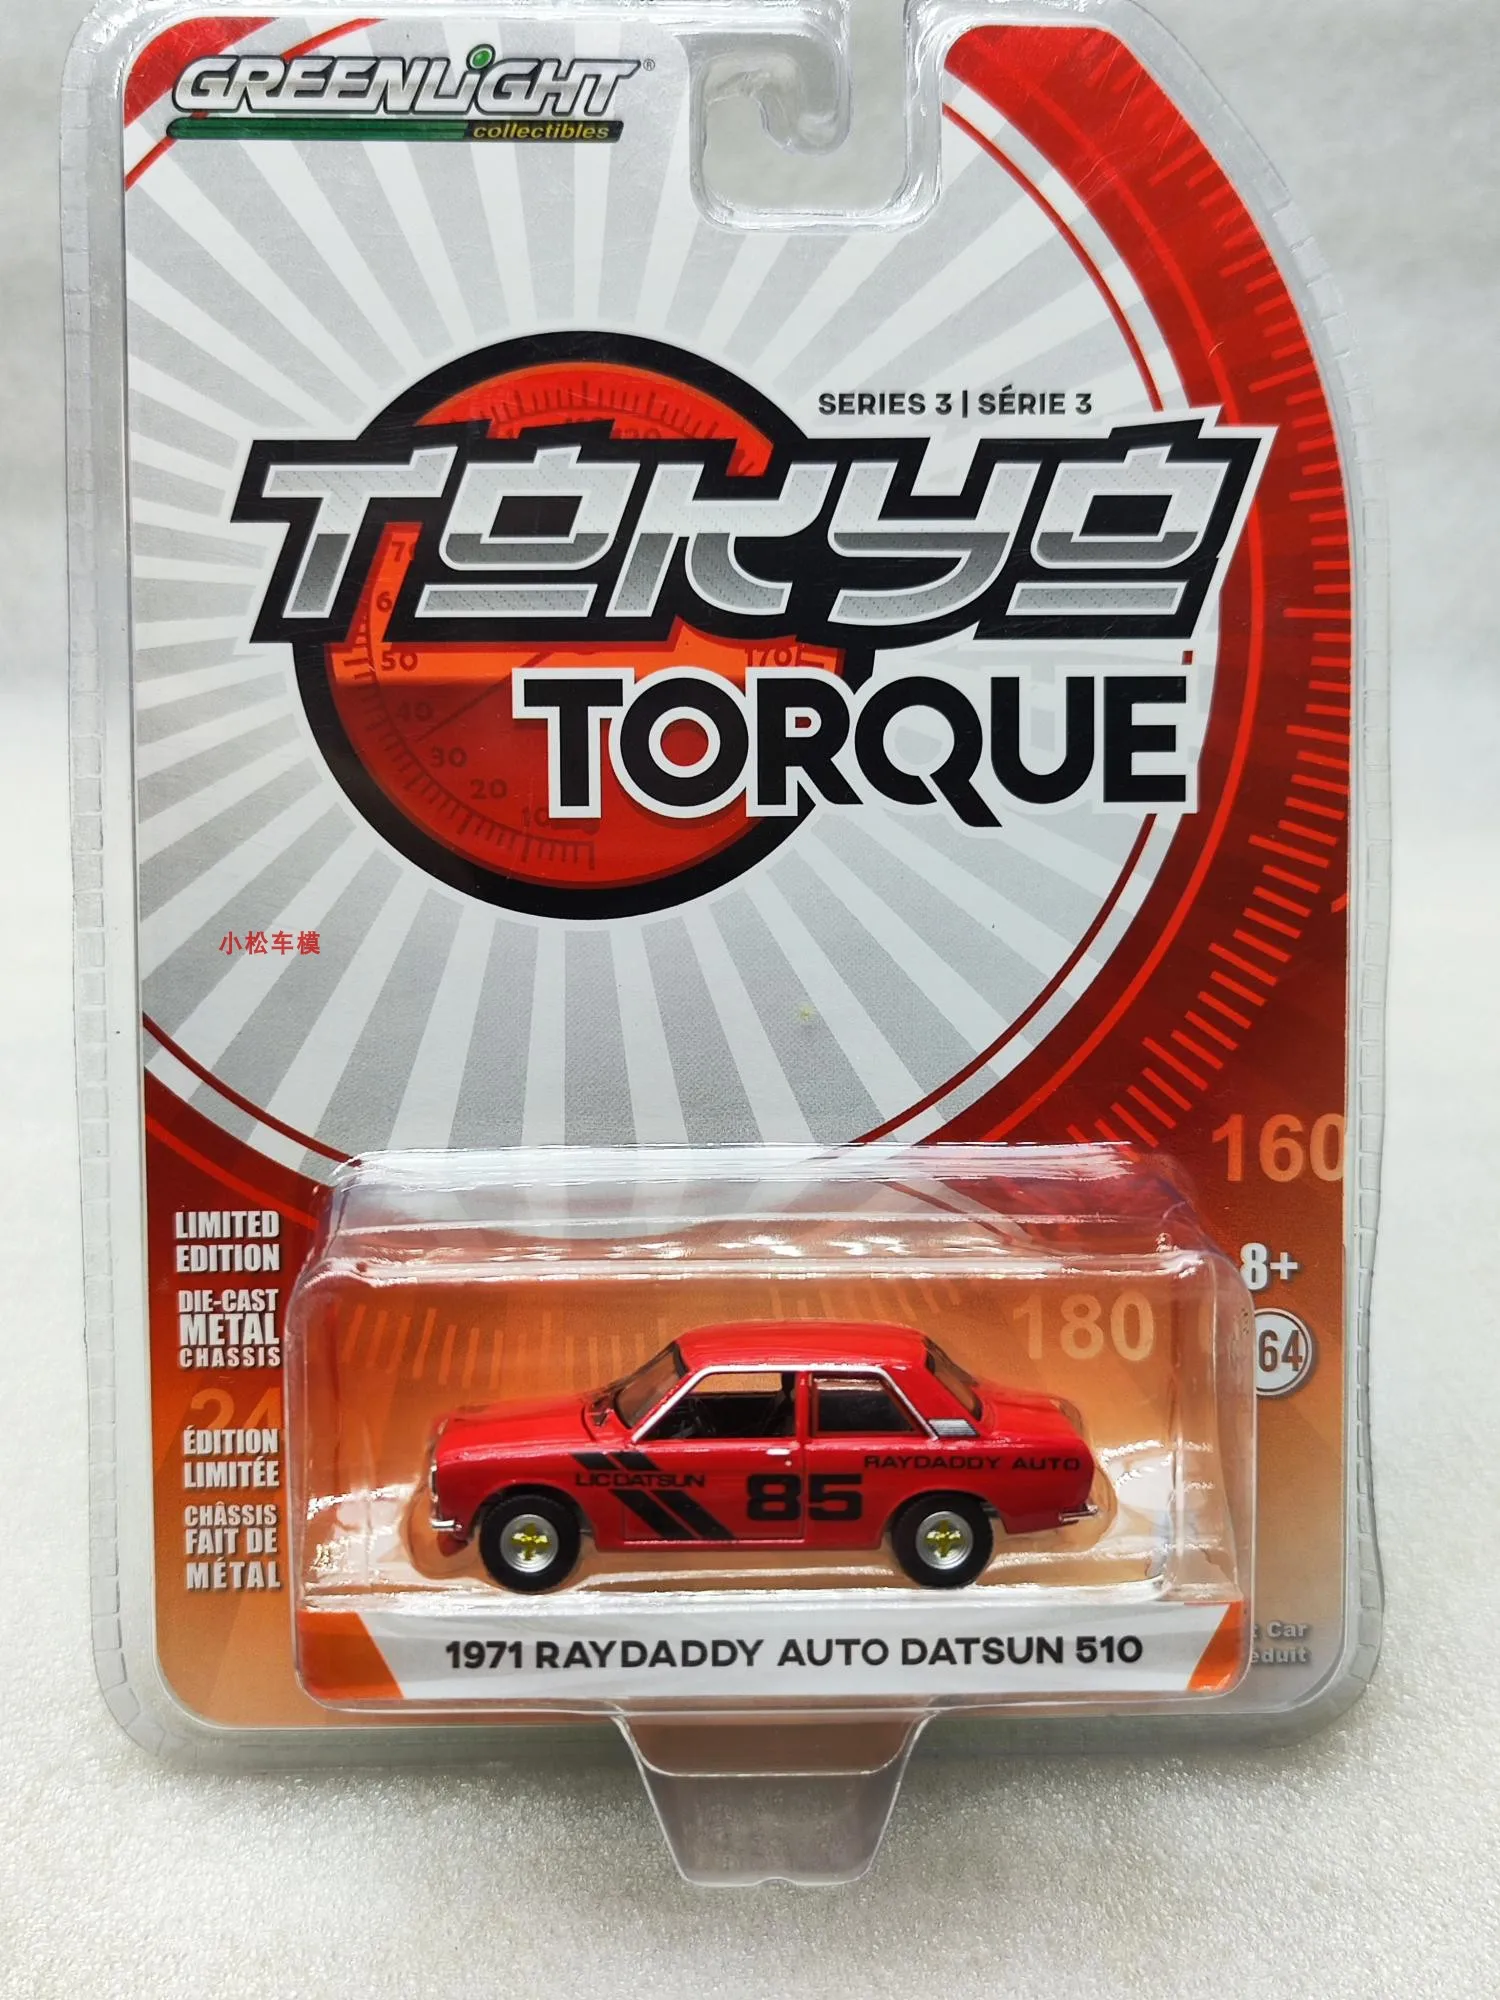 

Литой автомобиль GreenLight масштаб 1/64, игрушки 1971 raydad Auto Datsun 510 NO.85, литой металлический автомобиль, модель игрушки для мальчиков, подарок для дет...